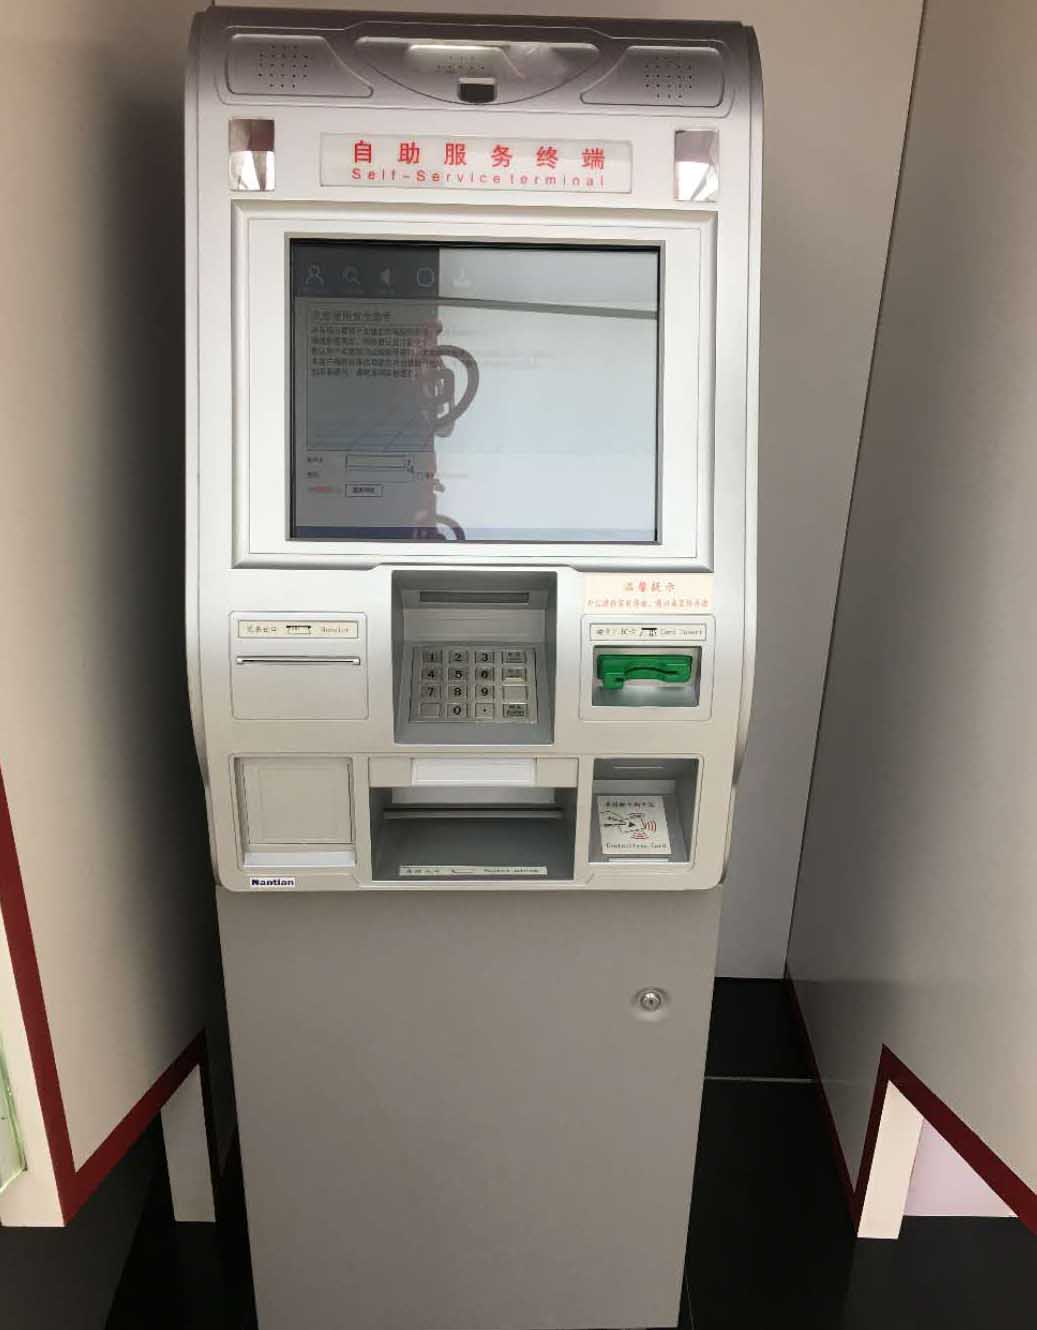 触摸屏玻星空下载官网·(中国)有限公司及条纹玻星空下载官网·(中国)有限公司在银行ATM机上的应用